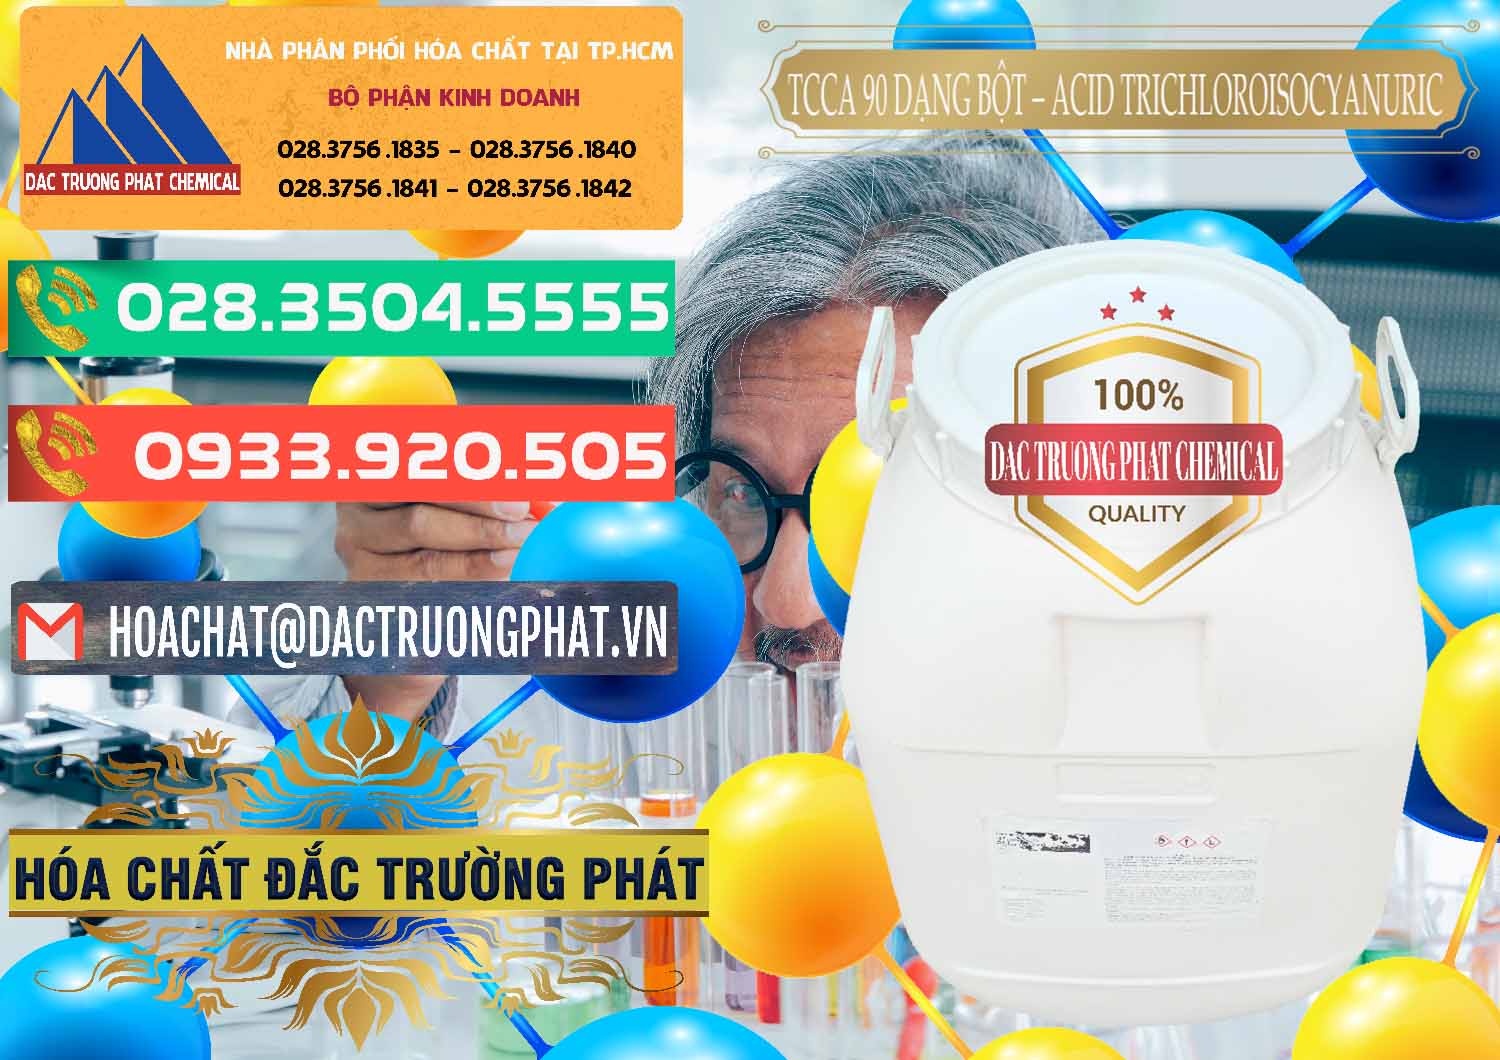 Cty chuyên bán & cung cấp TCCA - Acid Trichloroisocyanuric 90% Dạng Bột Trung Quốc China - 0161 - Công ty chuyên kinh doanh & cung cấp hóa chất tại TP.HCM - congtyhoachat.com.vn